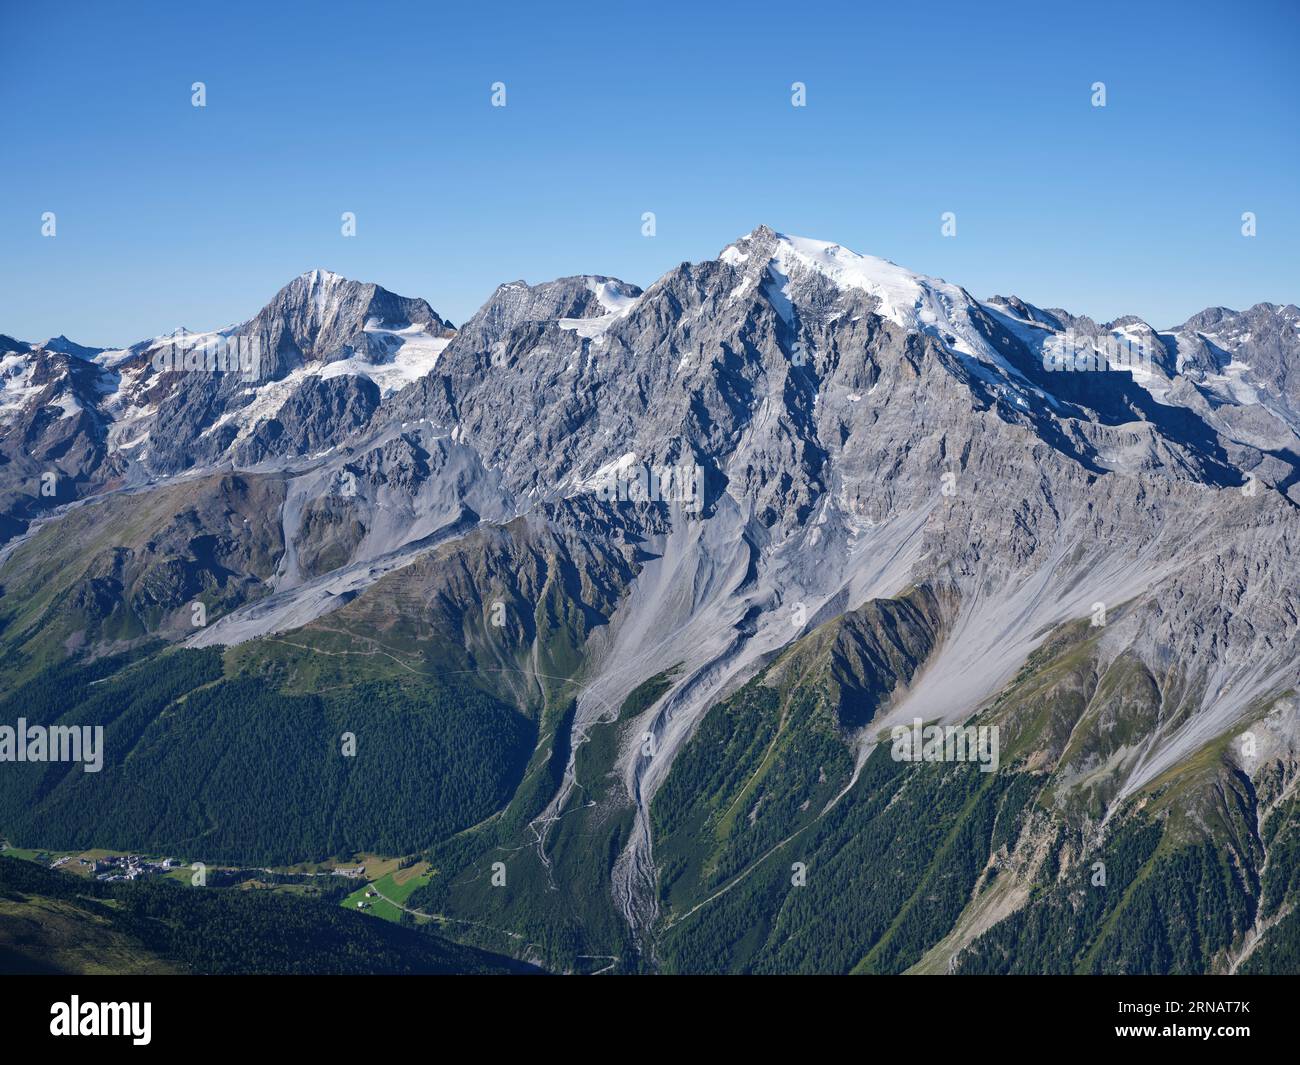 VUE AÉRIENNE. Le massif des Ortles avec la Gran Zebrù de 3851 m de haut (à gauche au loin) et les Ortles de 3905 m de haut (à droite). Province de Bolzano, Italie. Banque D'Images